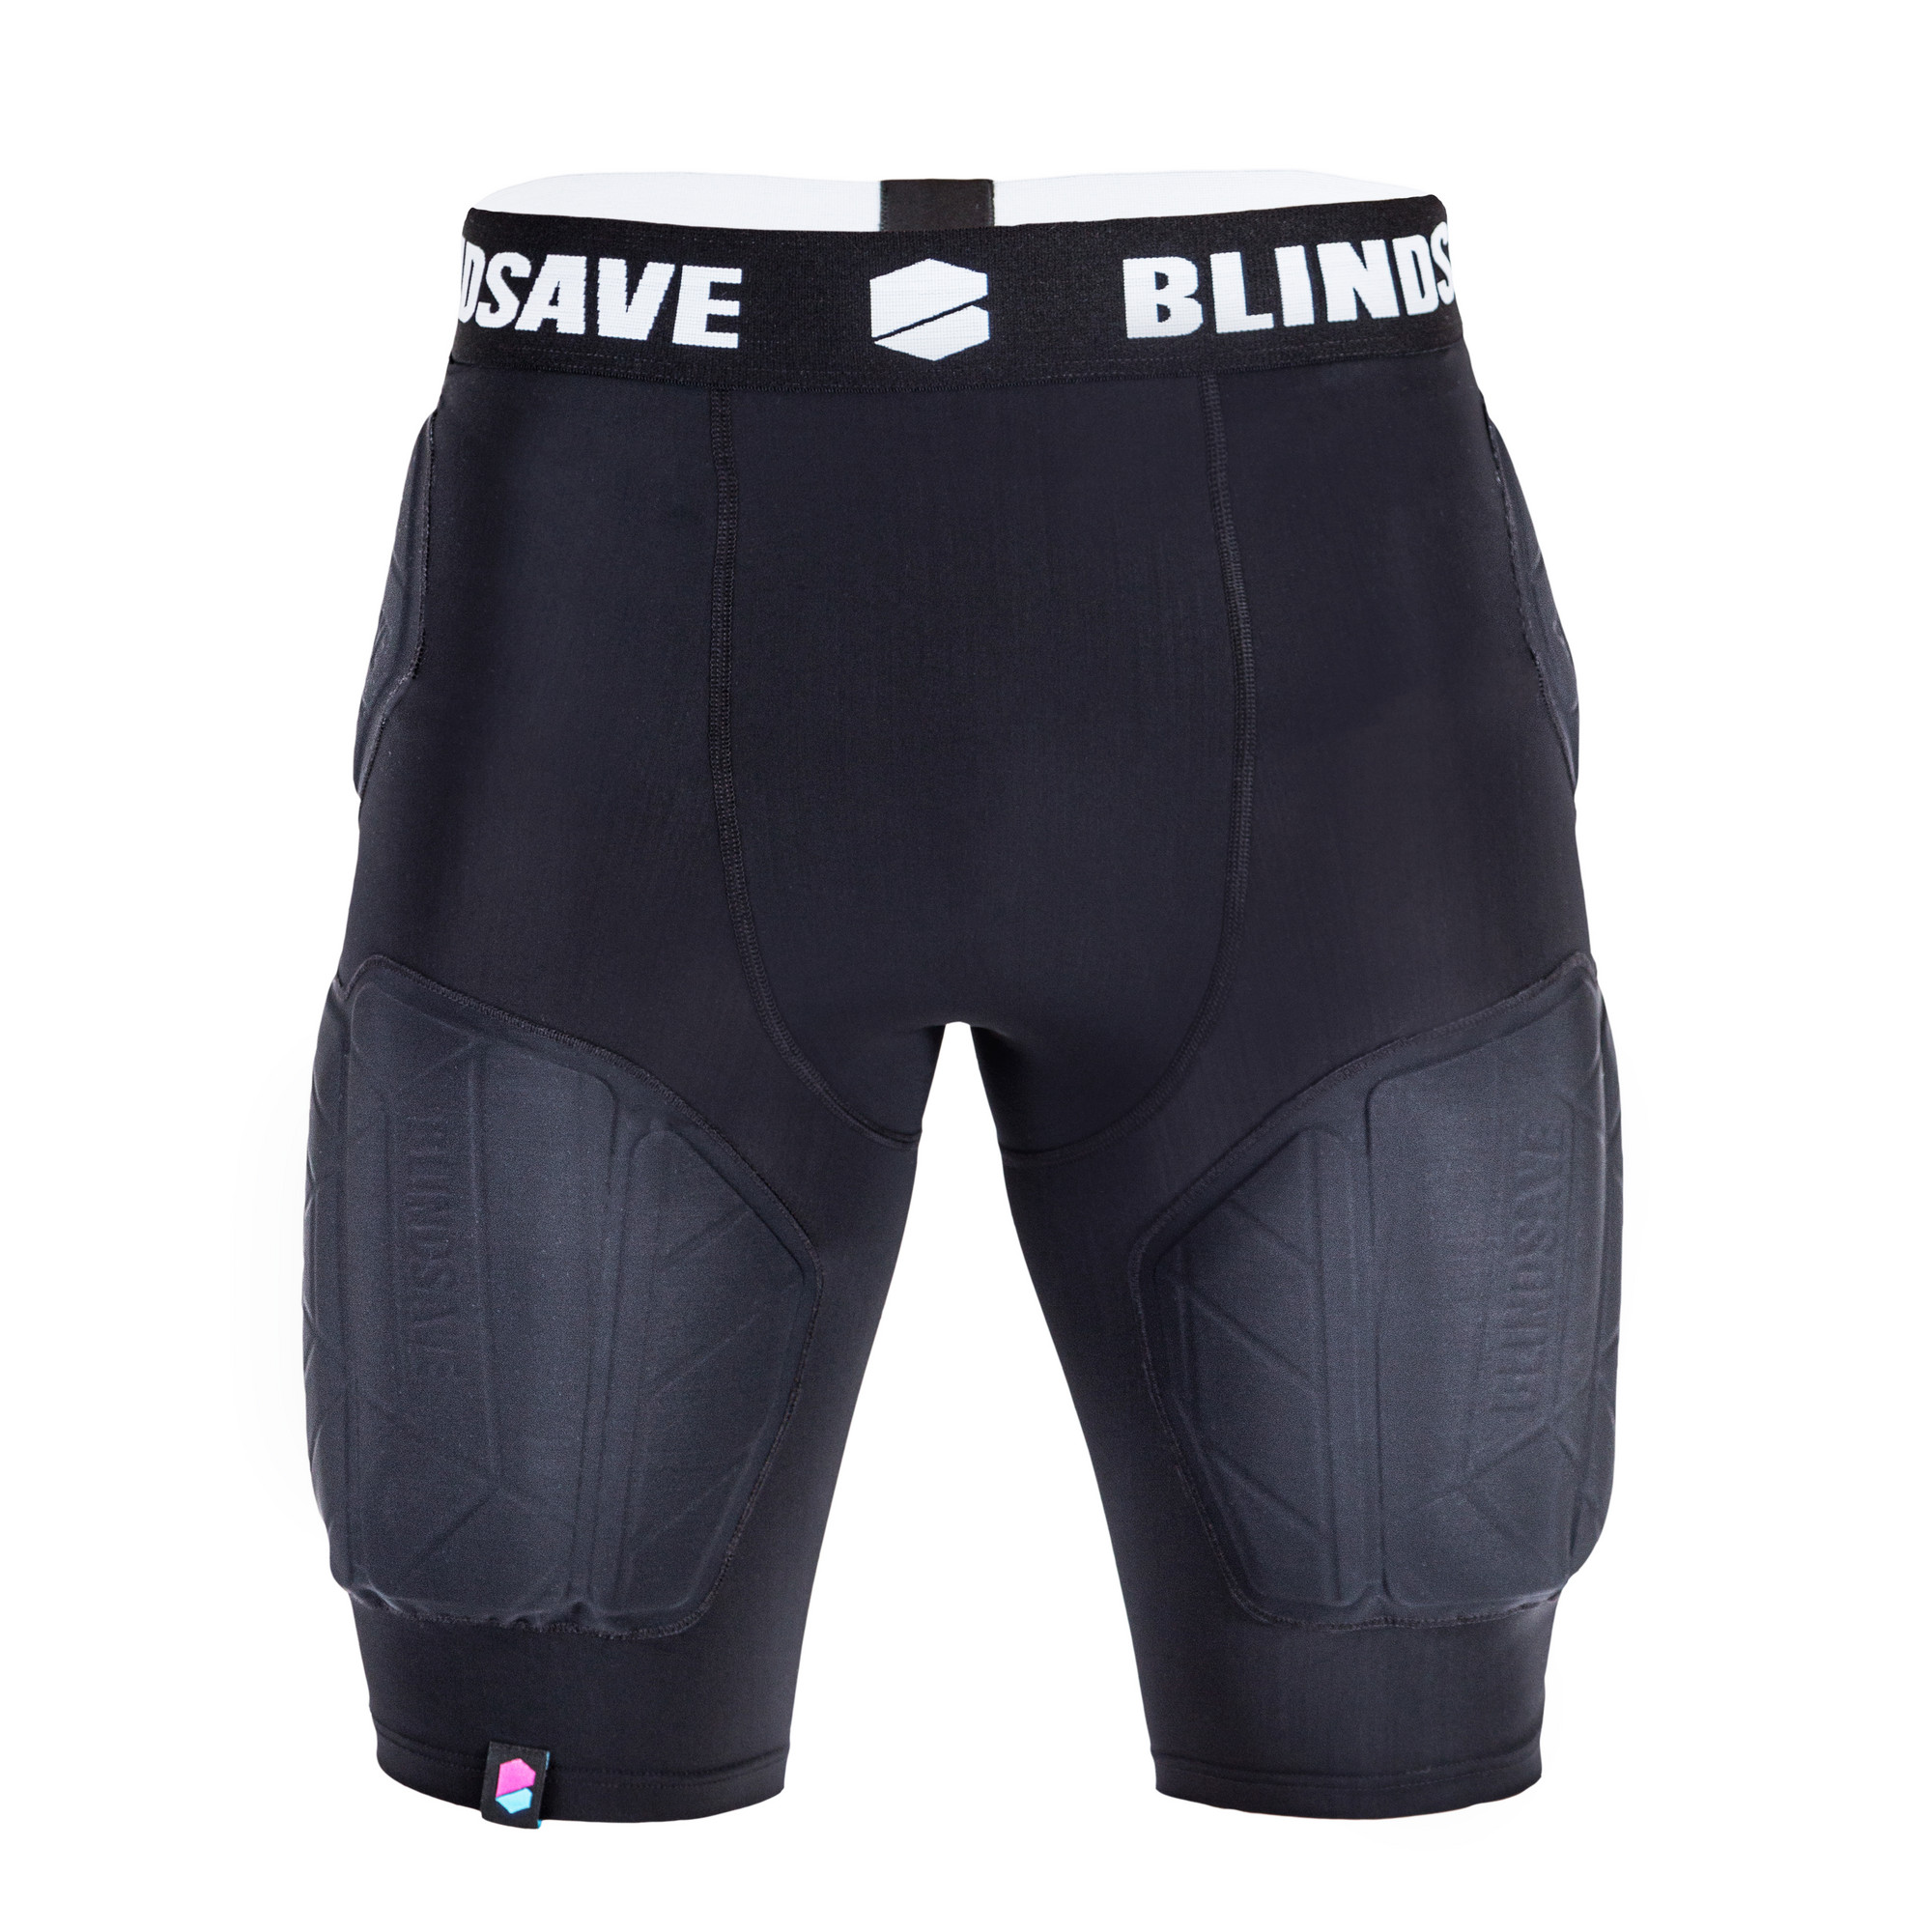 BlindSave Protection shorts PRO + cup XS, černá